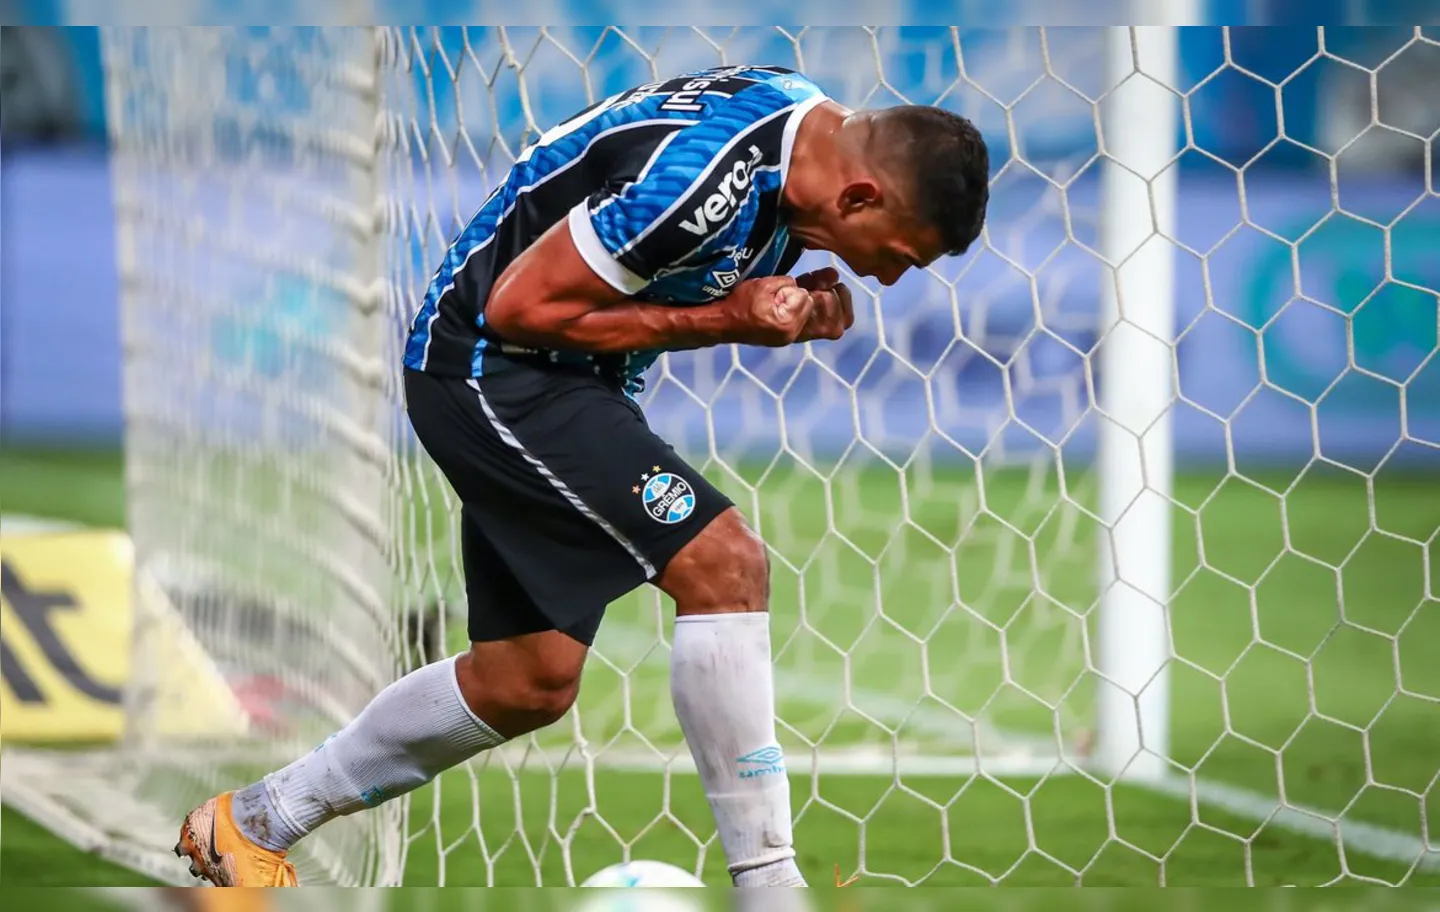 Gol de Diego Souza em Porto Alegre coloca o tricolor gaúcho em vantagem por vaga na decisão | Foto: Lucas Uebel | Grêmio FBPA